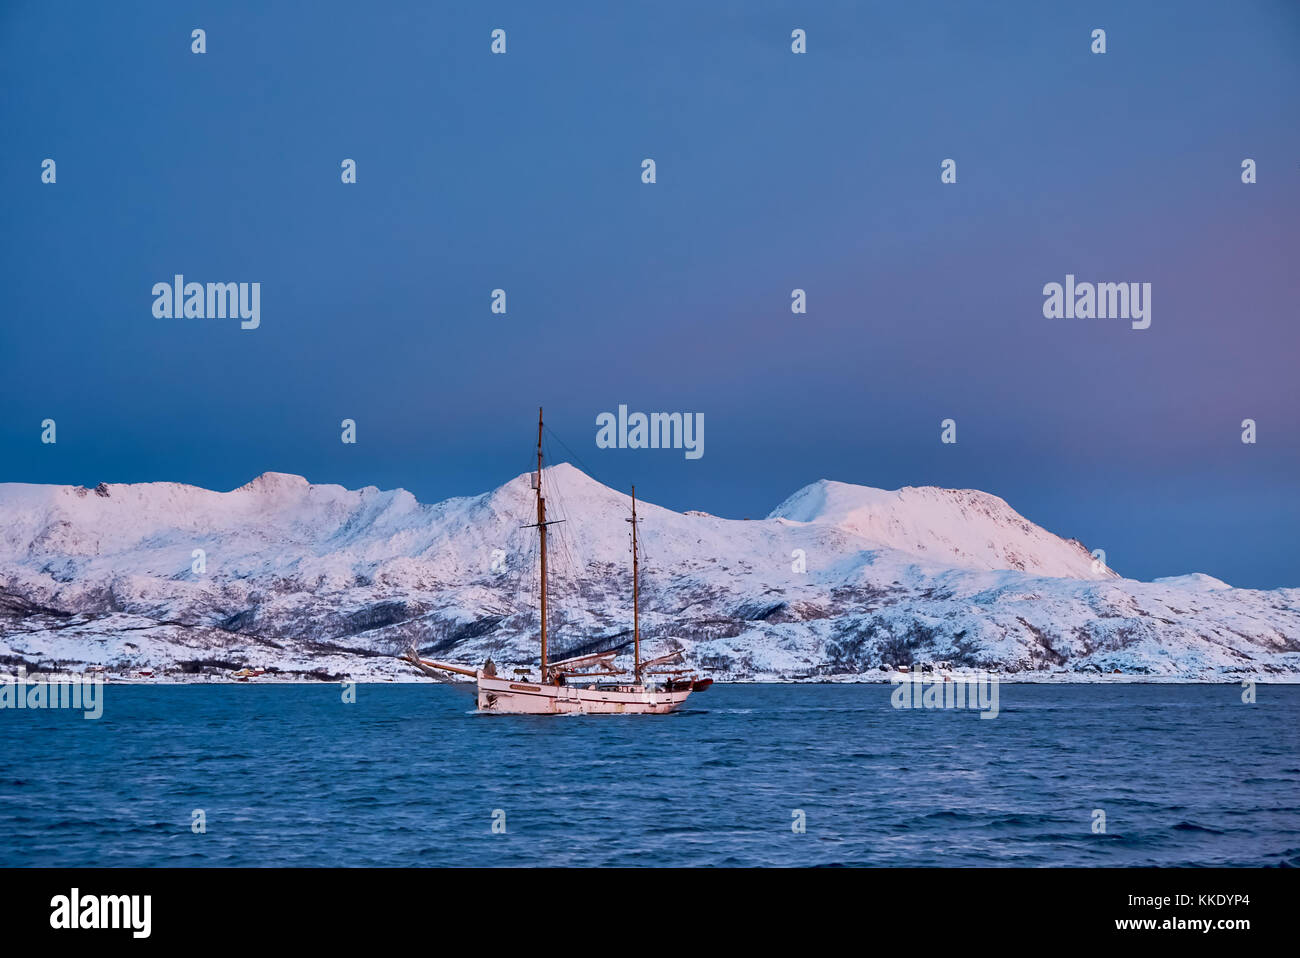 Alba sul fiordo con montagne coperte di neve e paesaggio invernale e sailship vicino a Tromso, Troms, Norvegia del nord, Europa Foto Stock